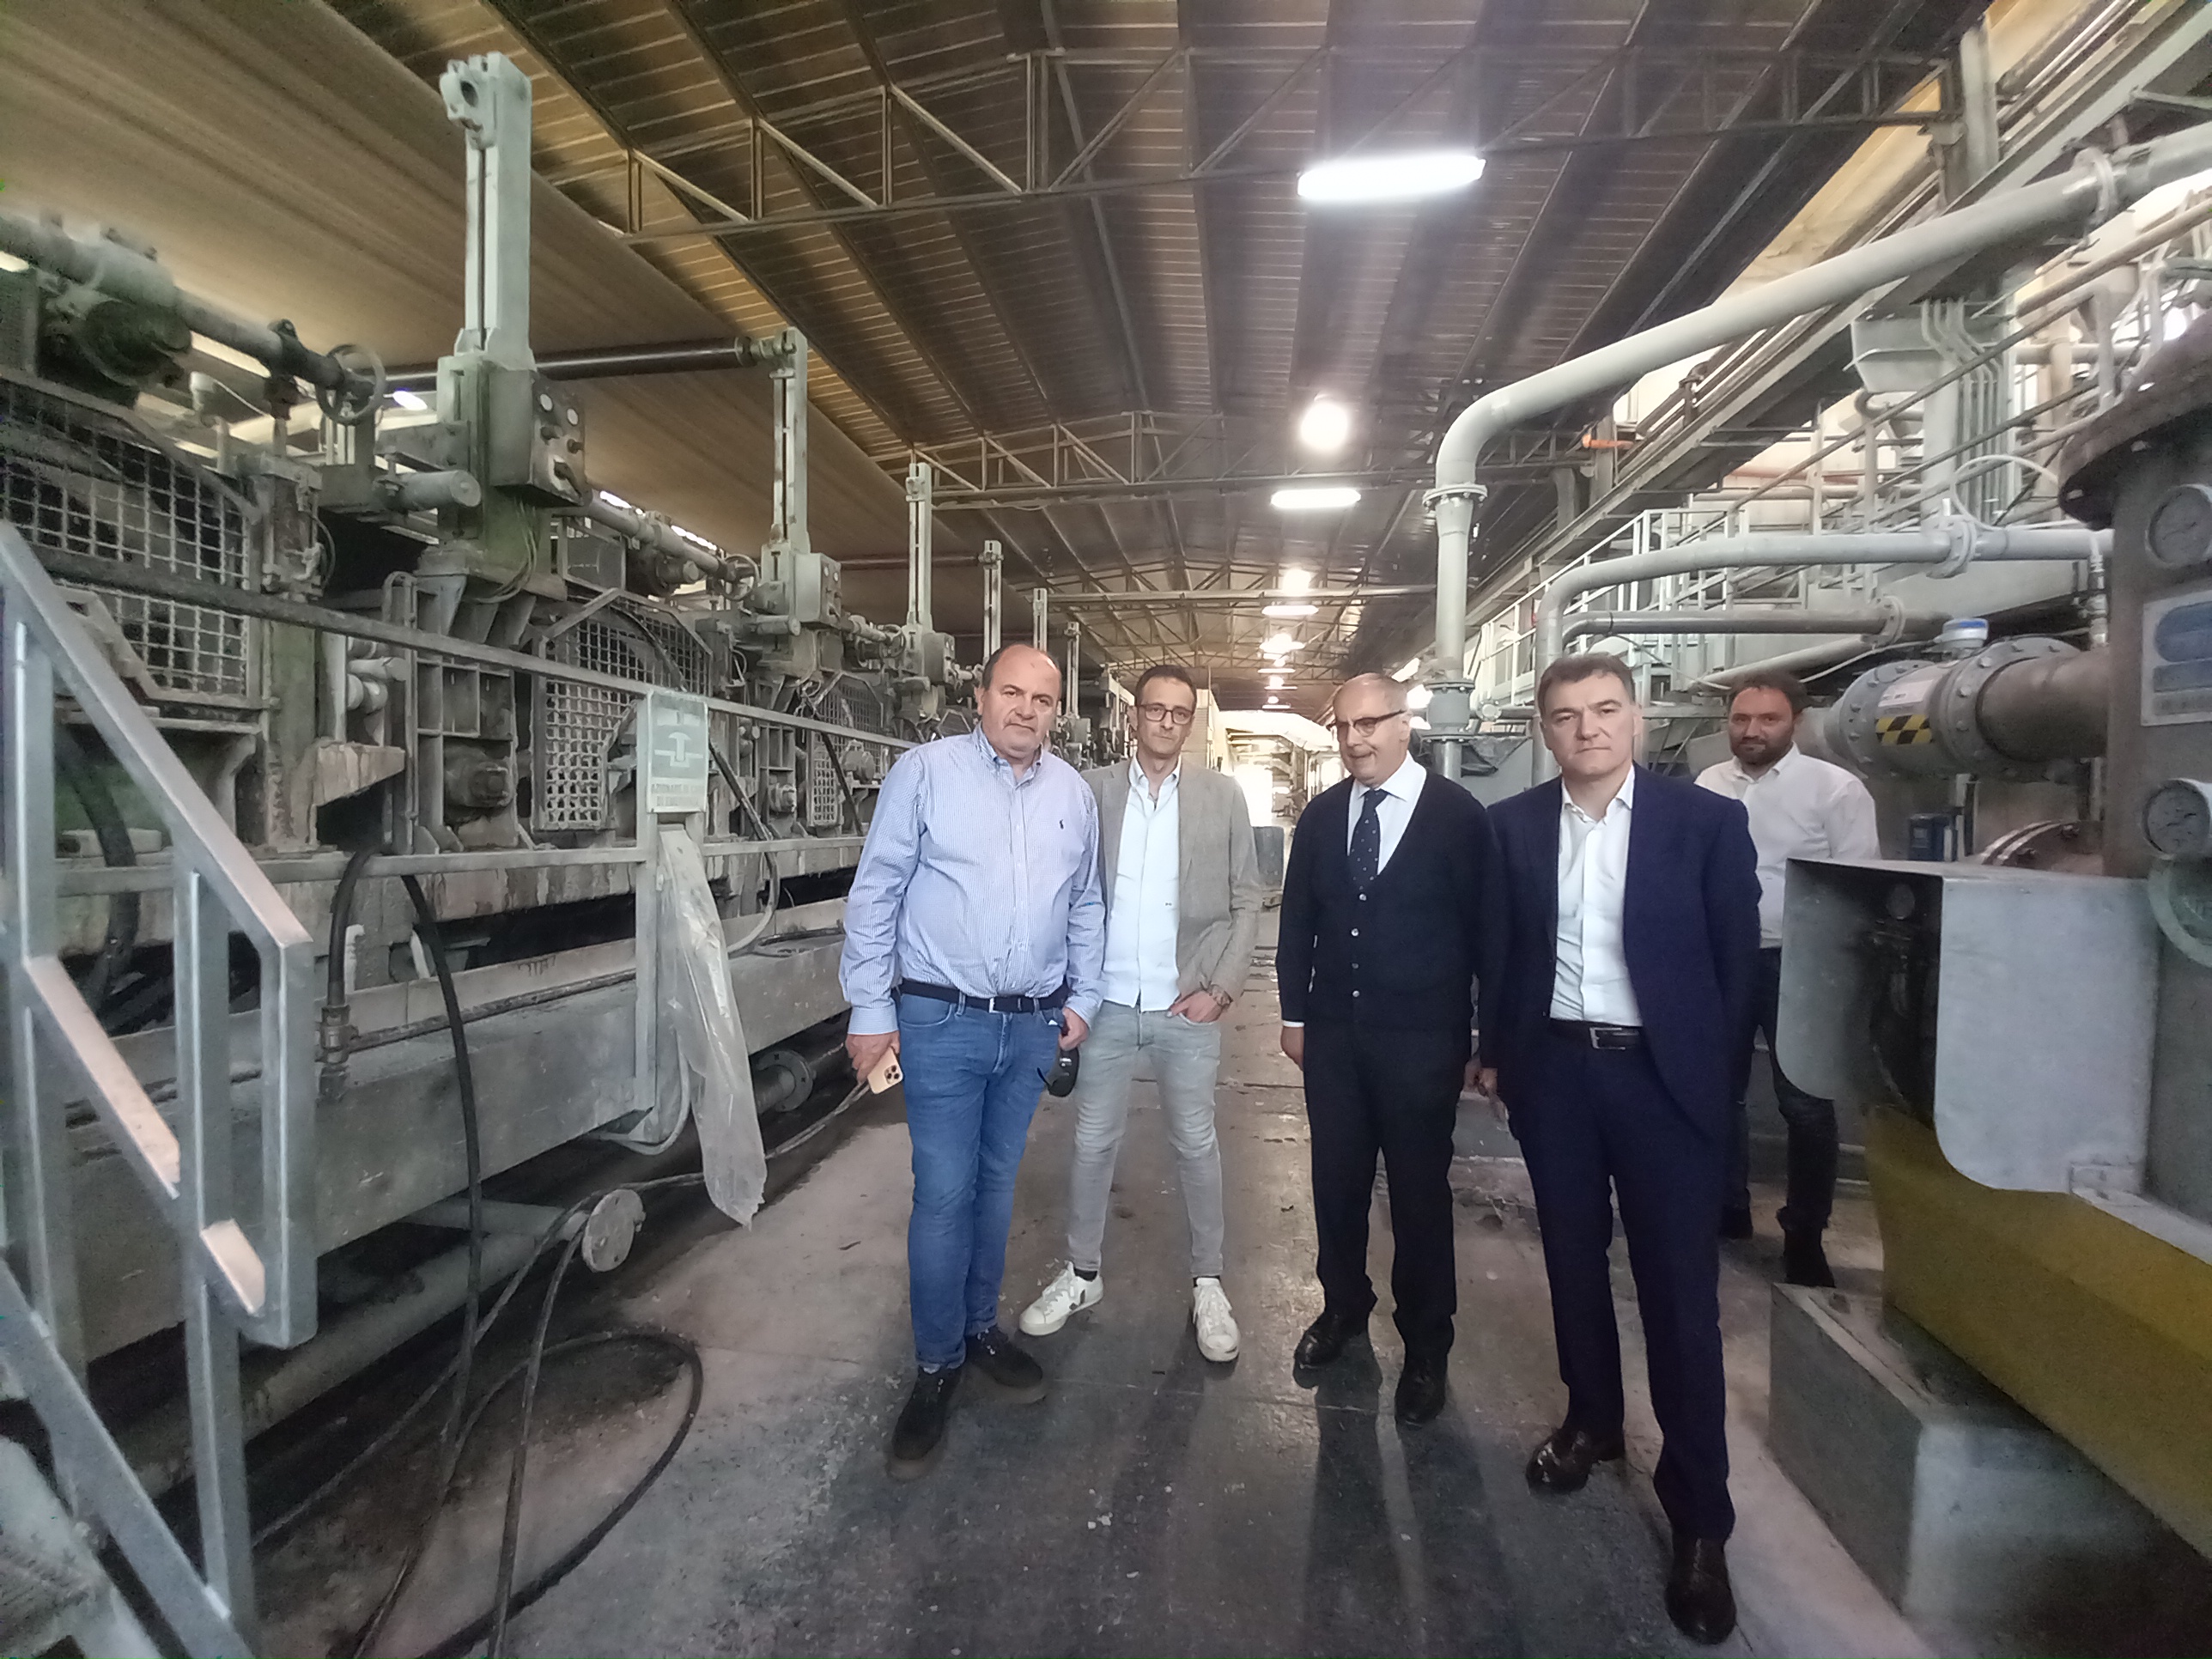 Il Presidente De Angelis visita alla Cartiera San Martino: “Realtà produttiva importante e attenta allo sviluppo sostenibile”